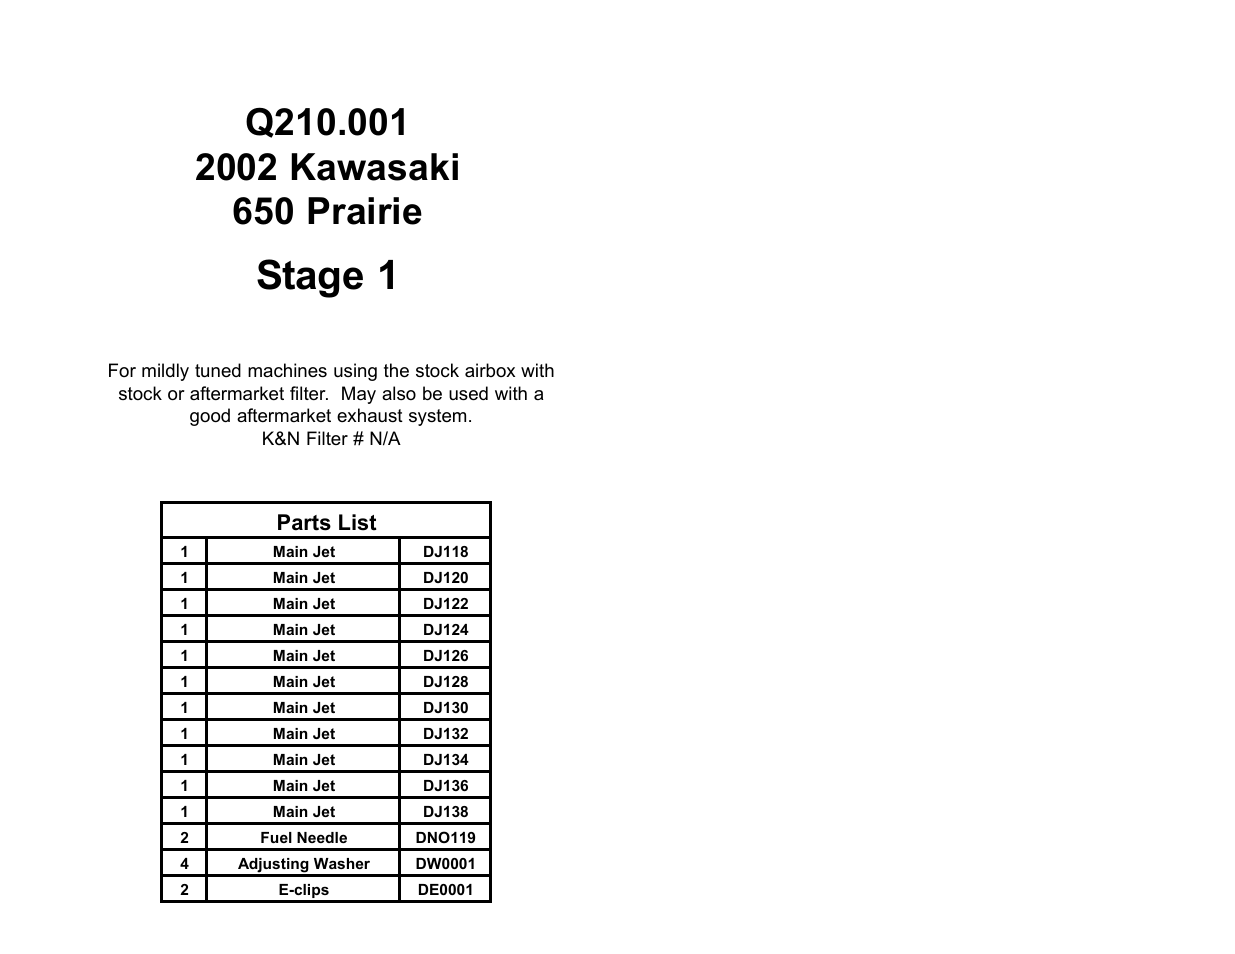 DynoJet Jet Kit for Kawasaki Prairie 650 (2002)